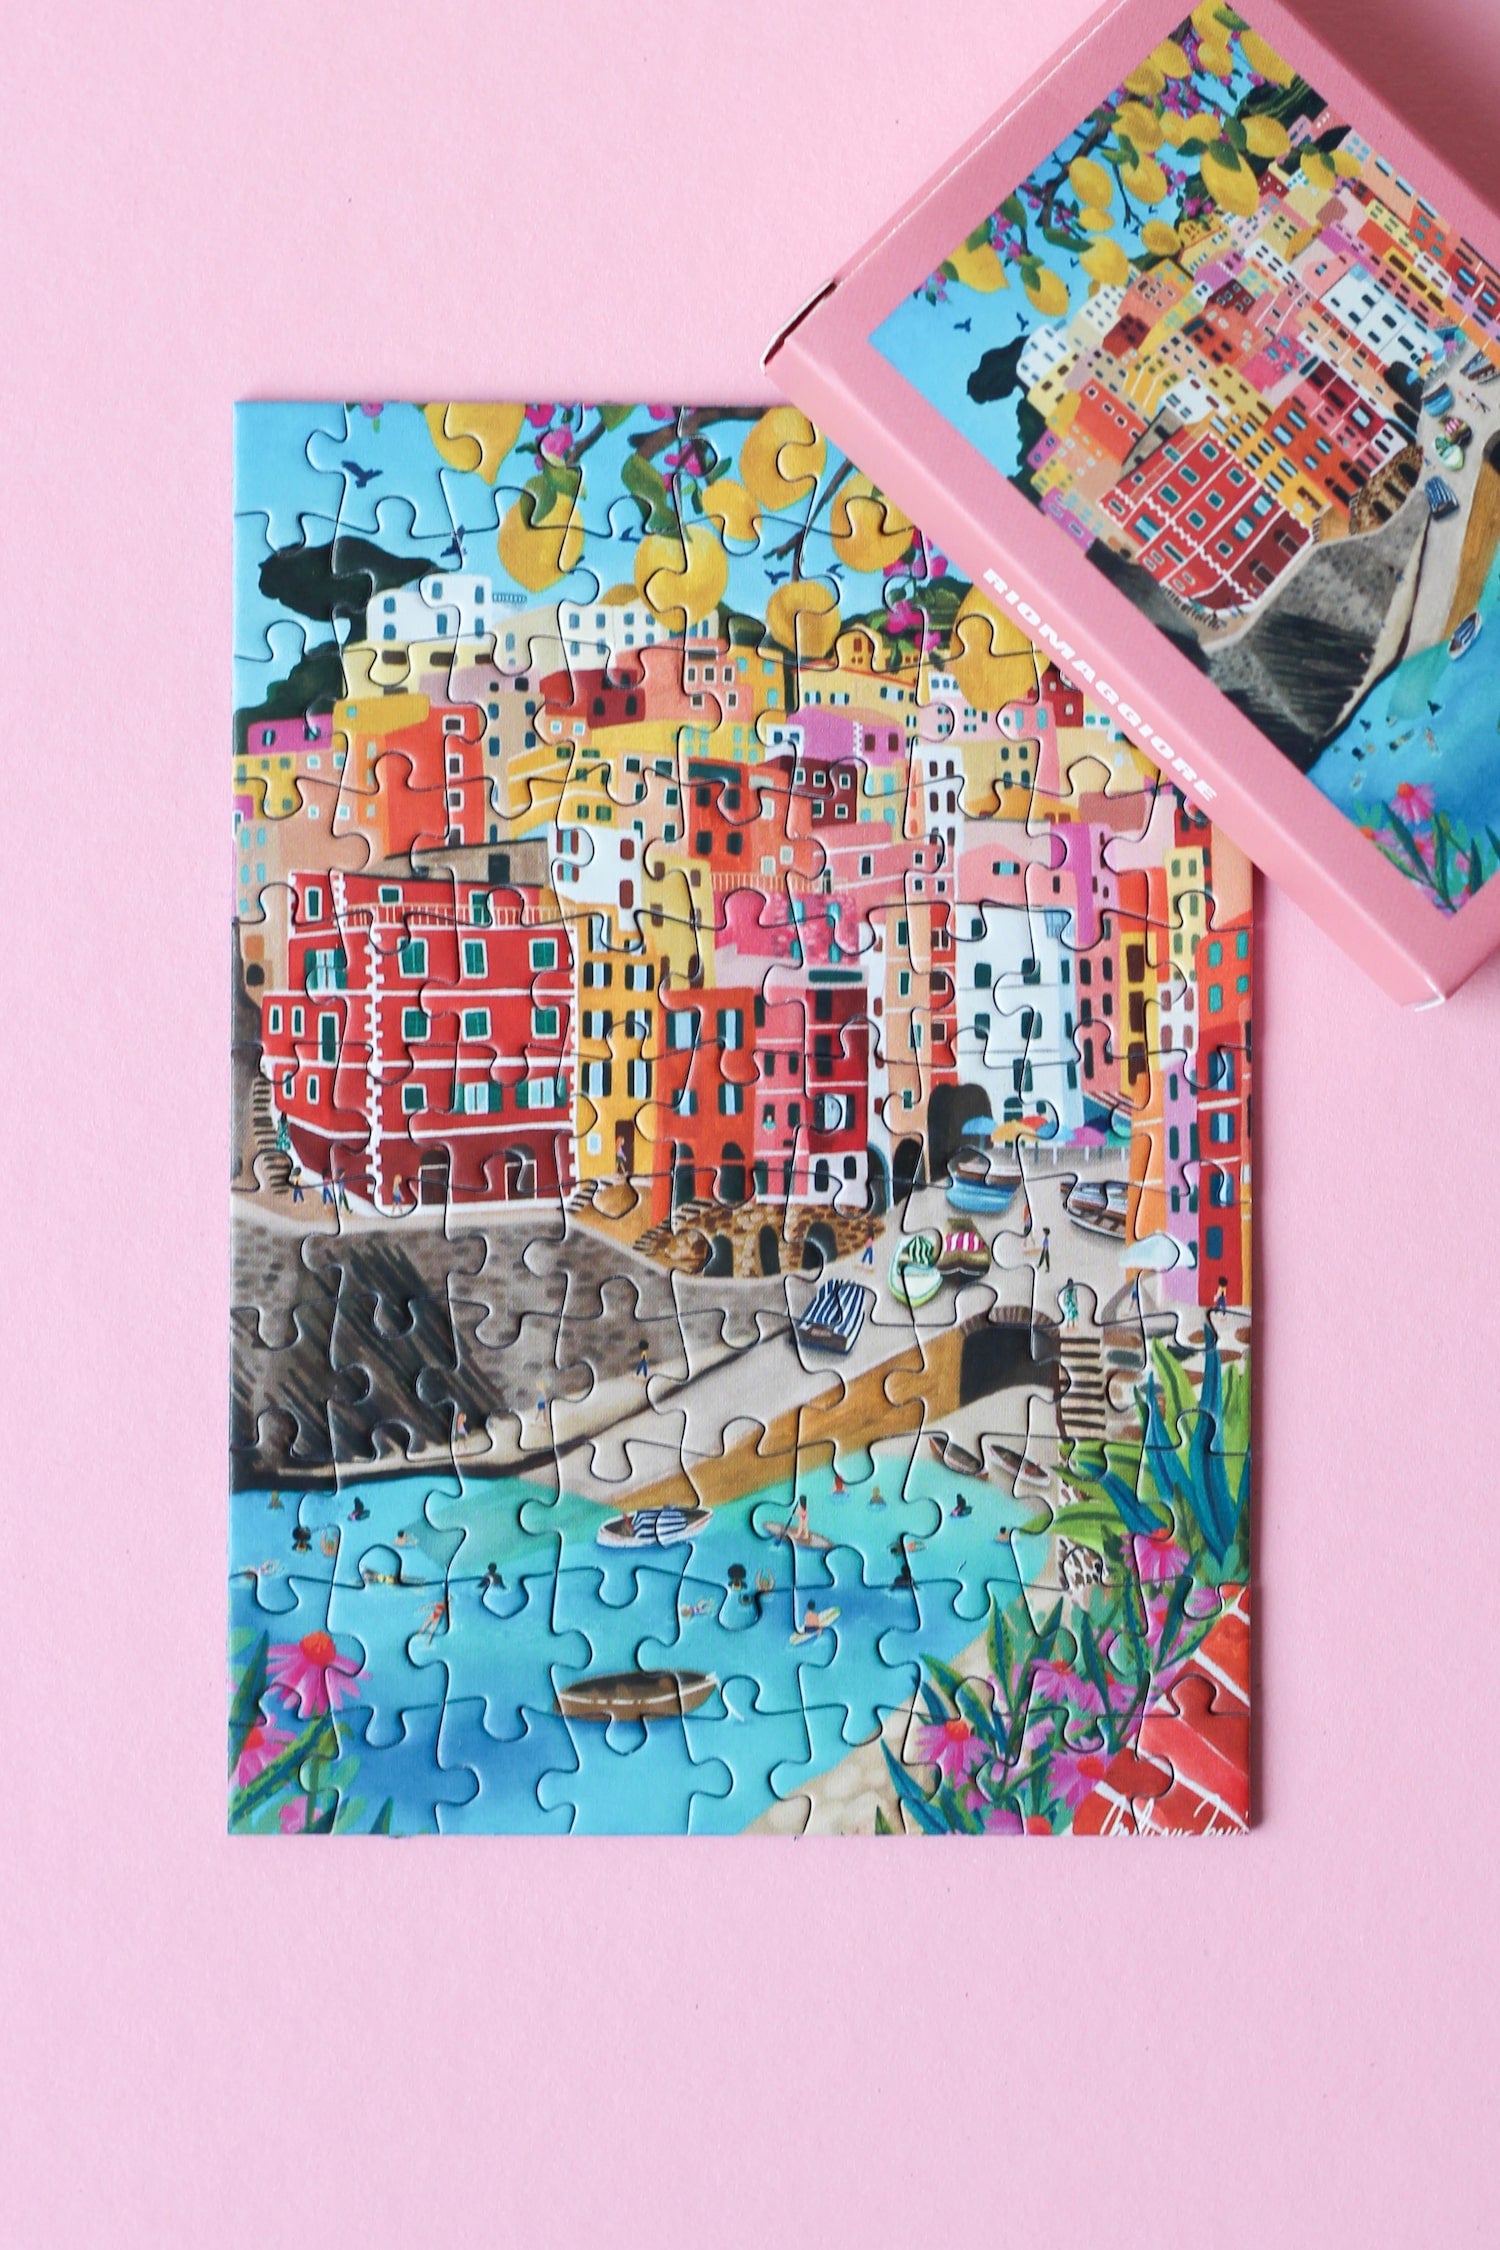 Außergewöhnliches Minipuzzle für Erwachsene mit 99 Teilen, das Riomaggiore in Cinque Terre, Italien zeigt.